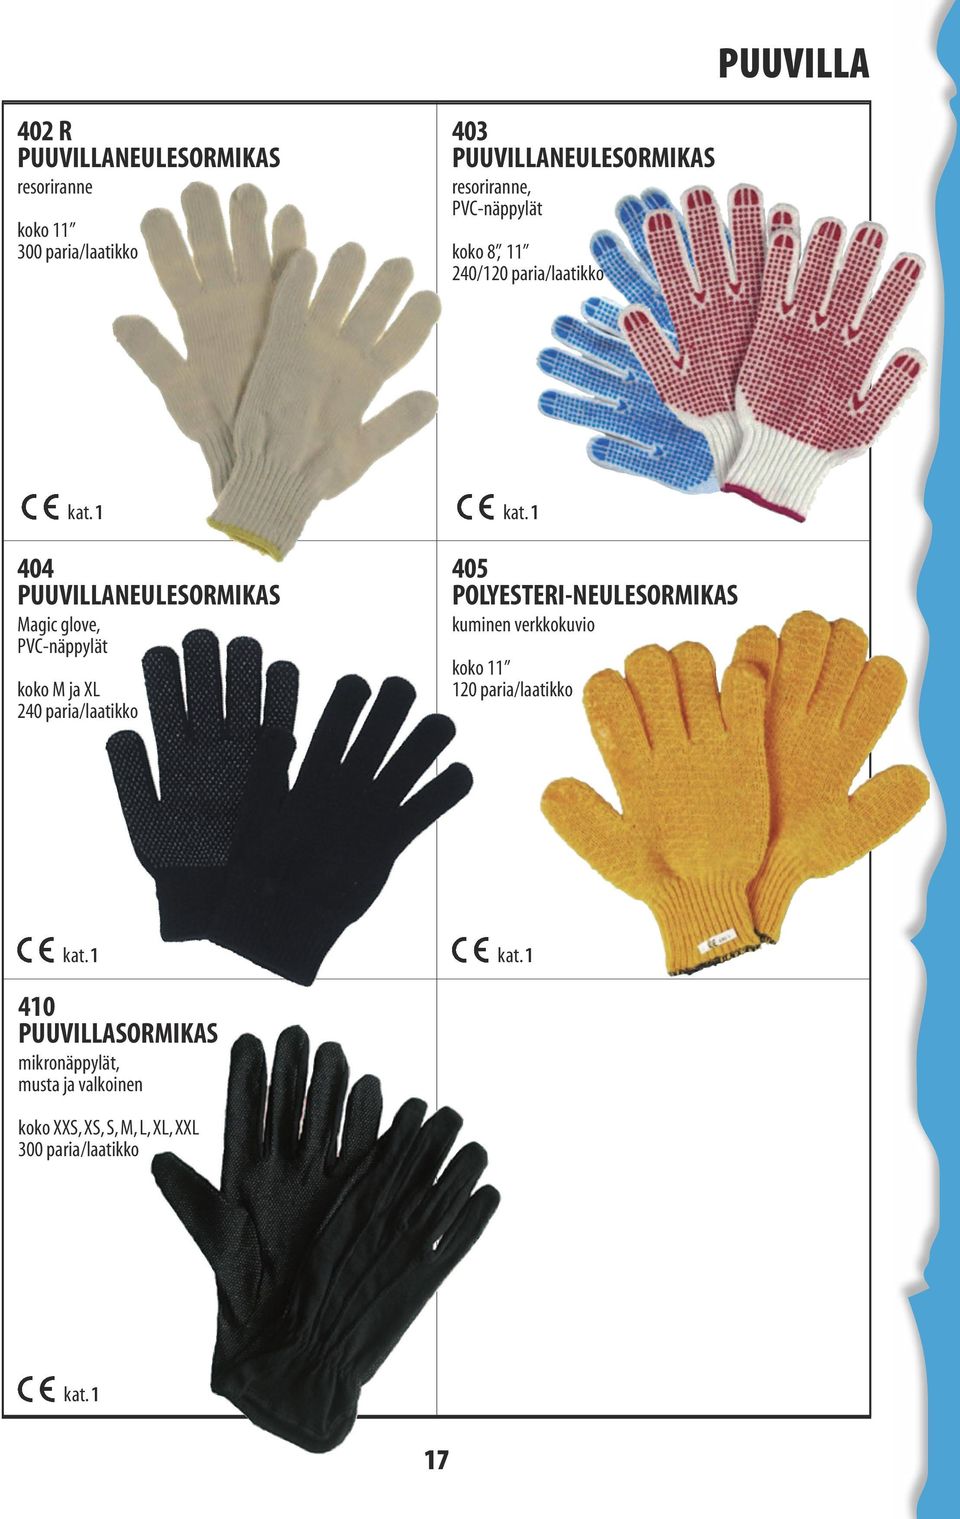 Magic glove, PVC-näppylät koko M ja XL 240 paria/laatikko 405 polyesteri-neulesormikas